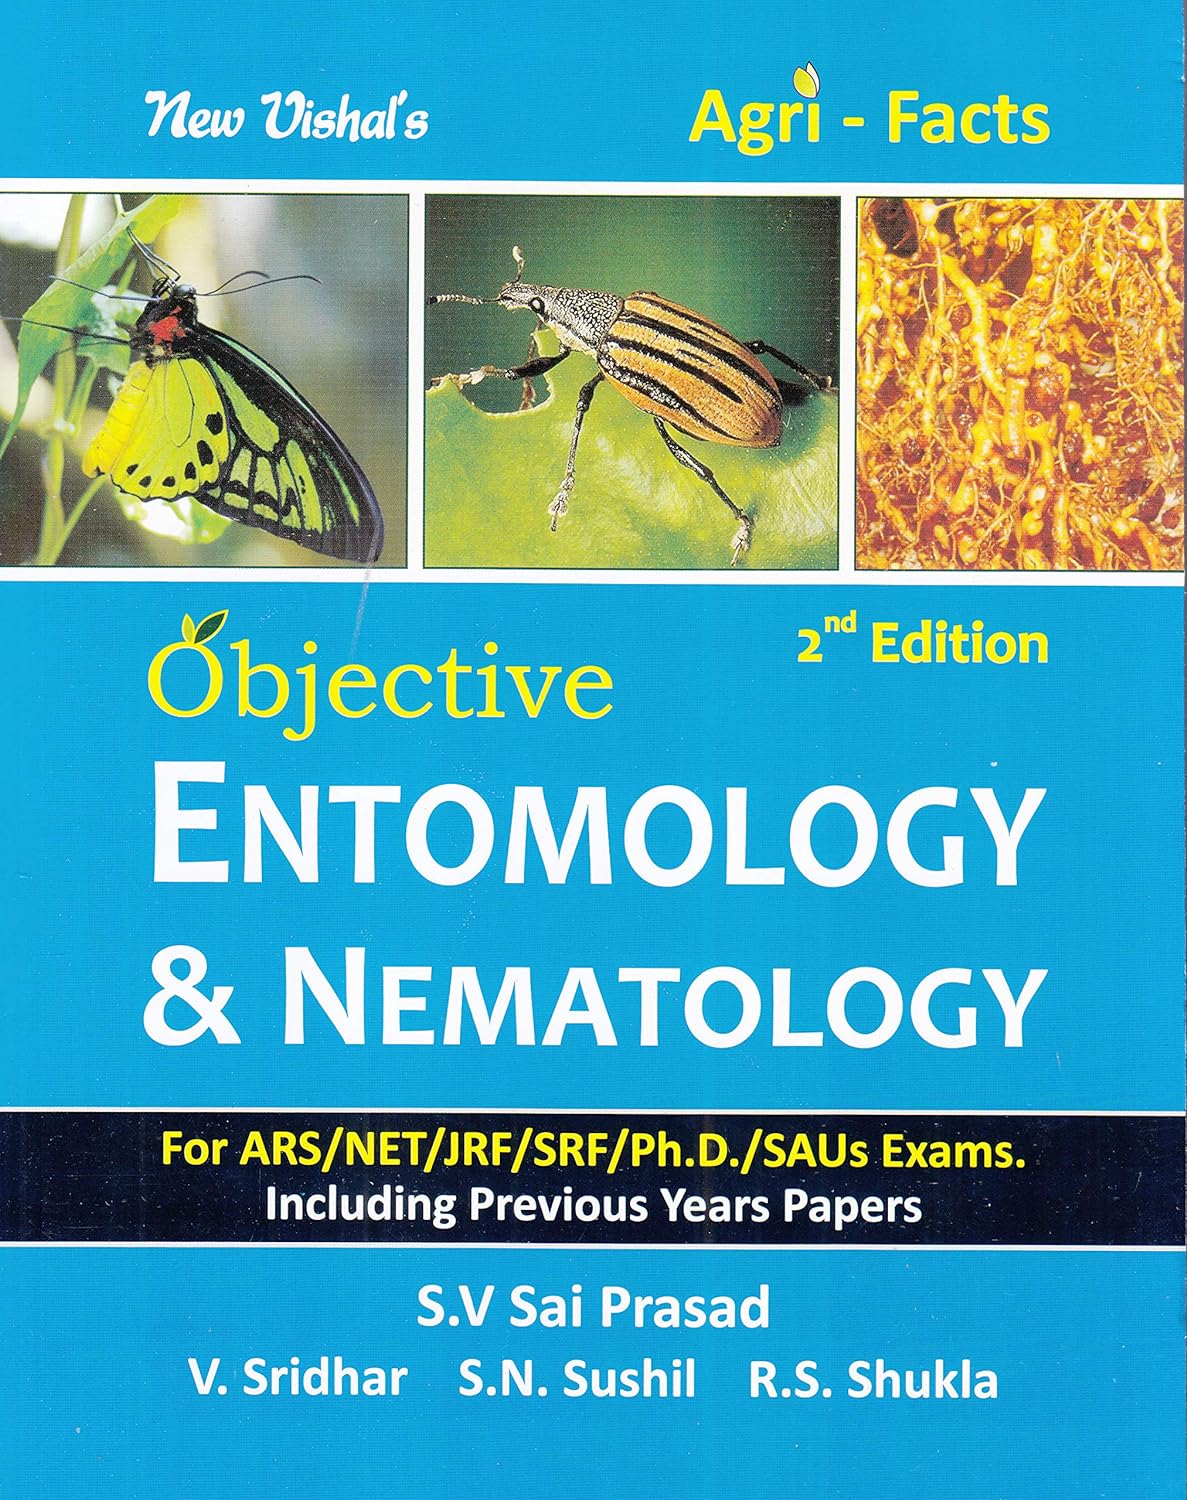 Agri Facts Objective Entomology and Nematology 2nd Edition by S. V. Sai Prasad